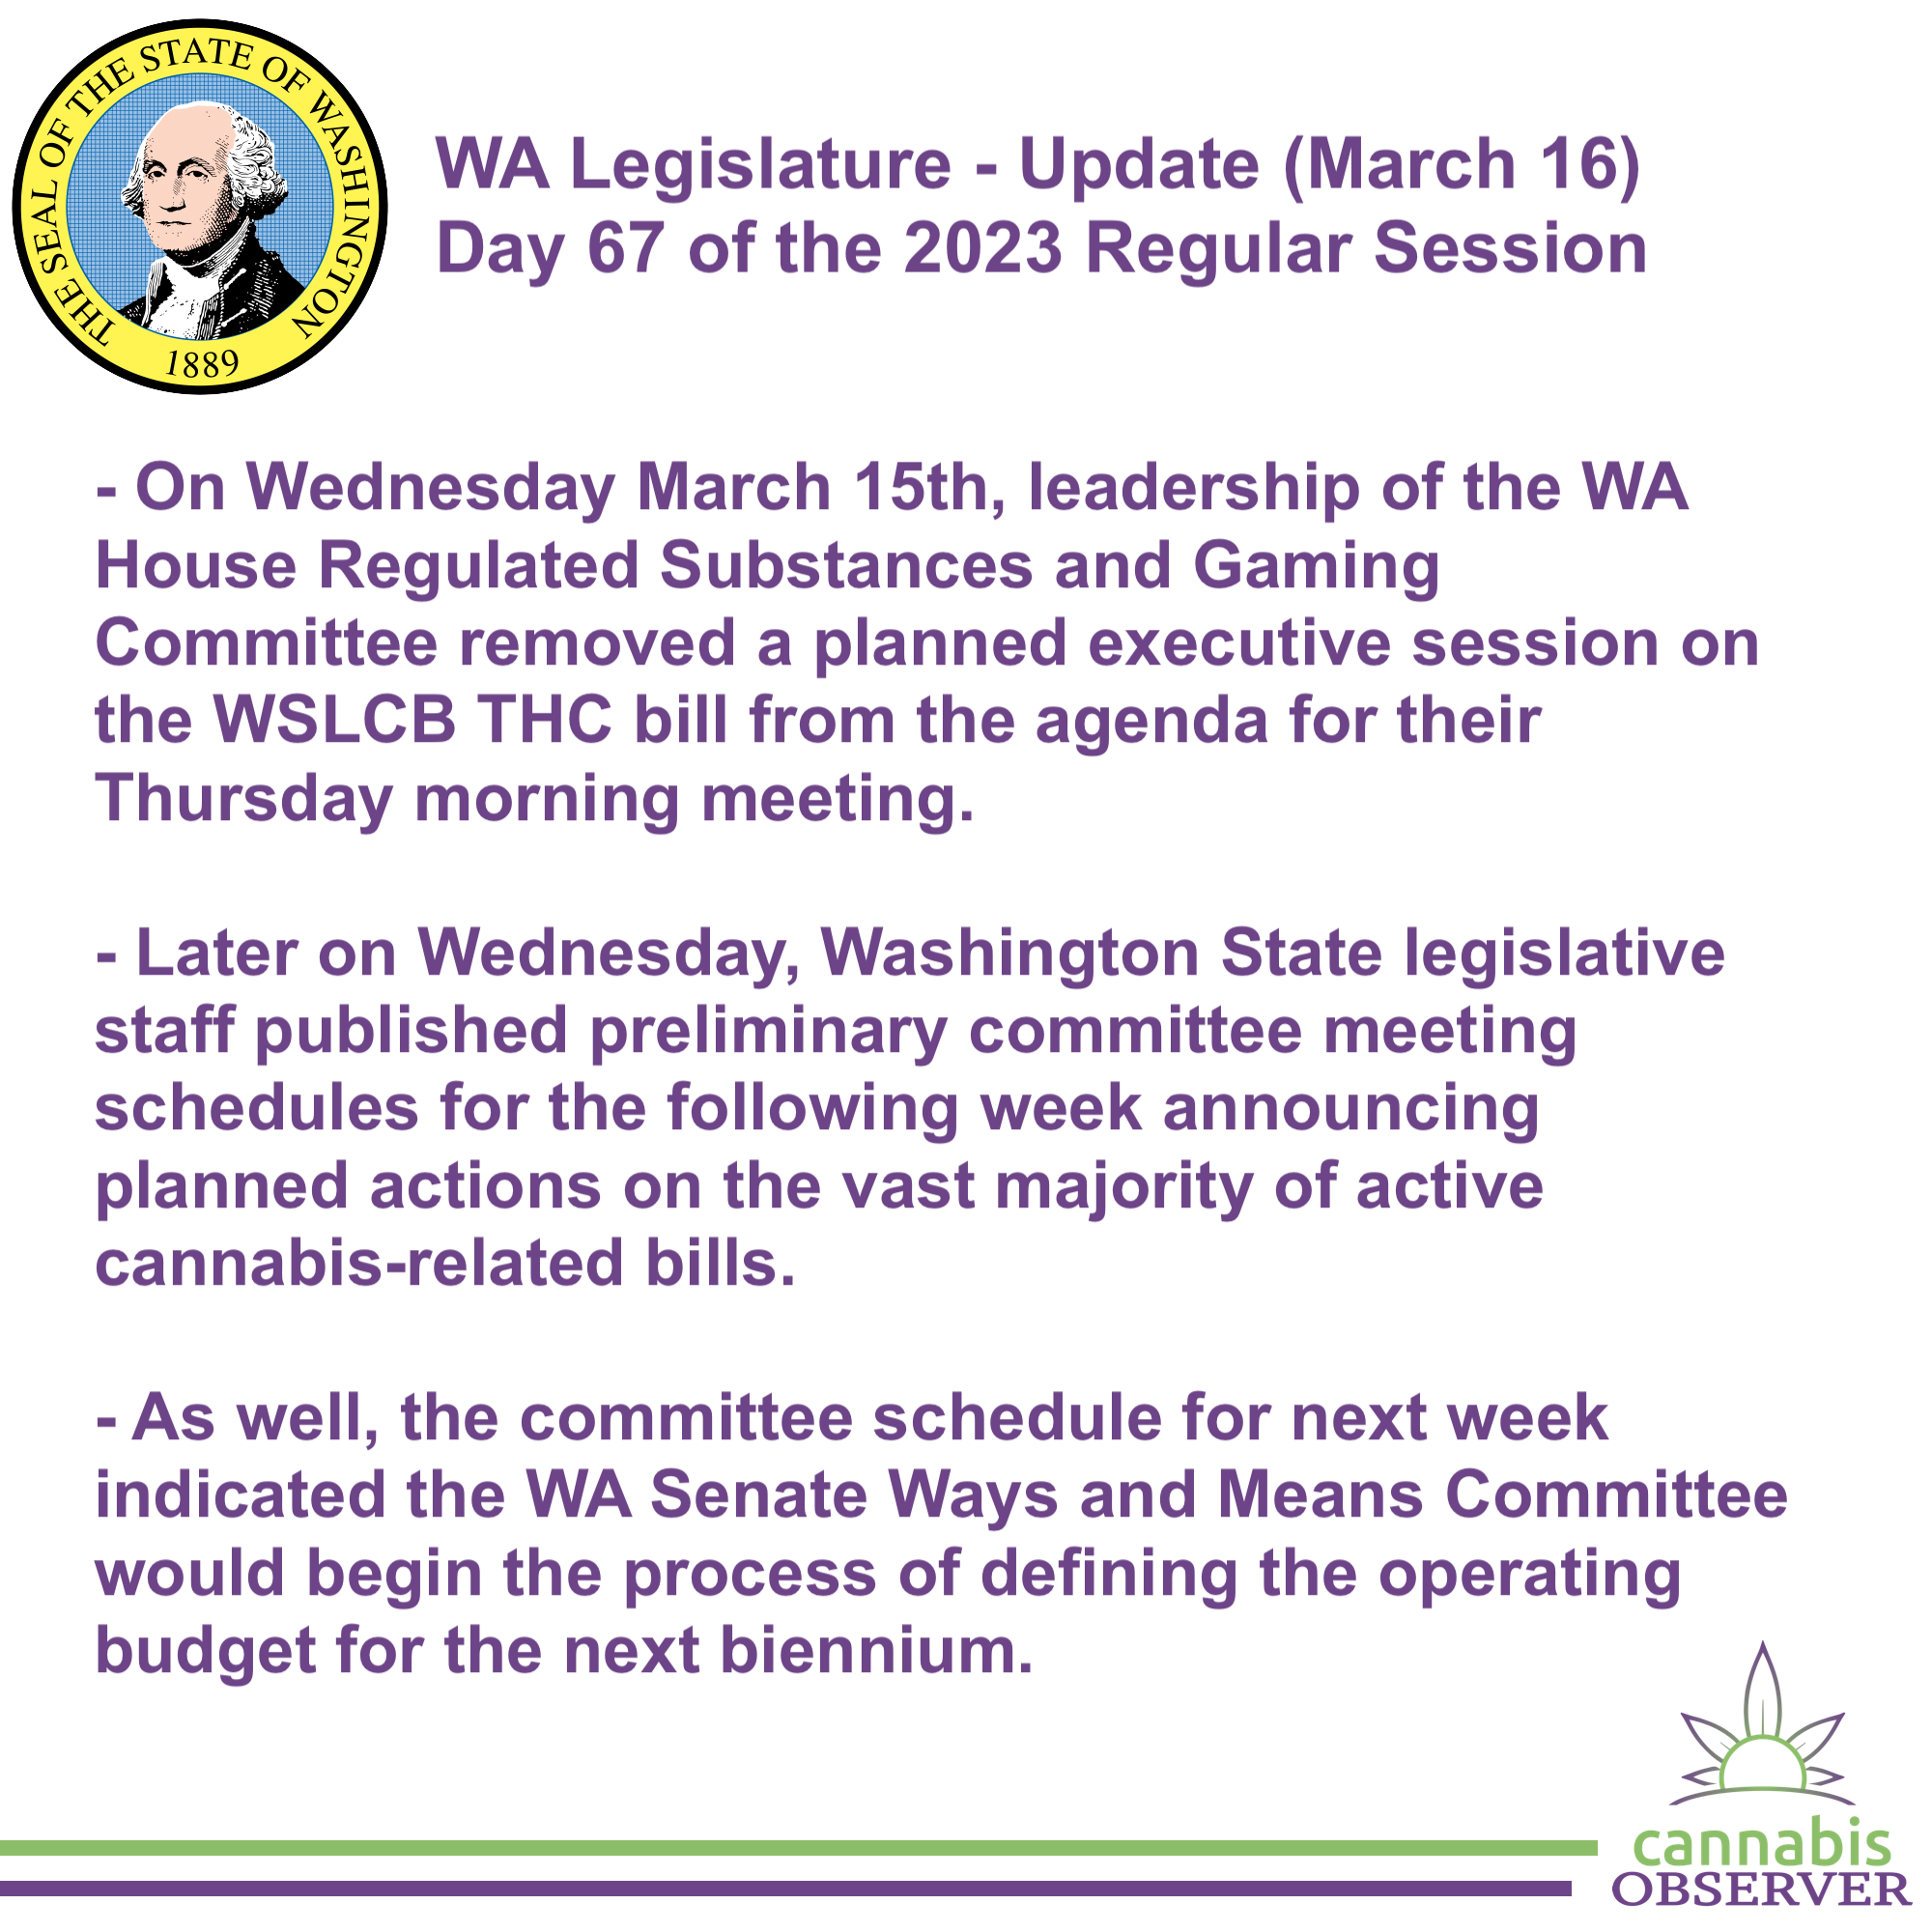 WA Legislature - Update (March 16, 2023)